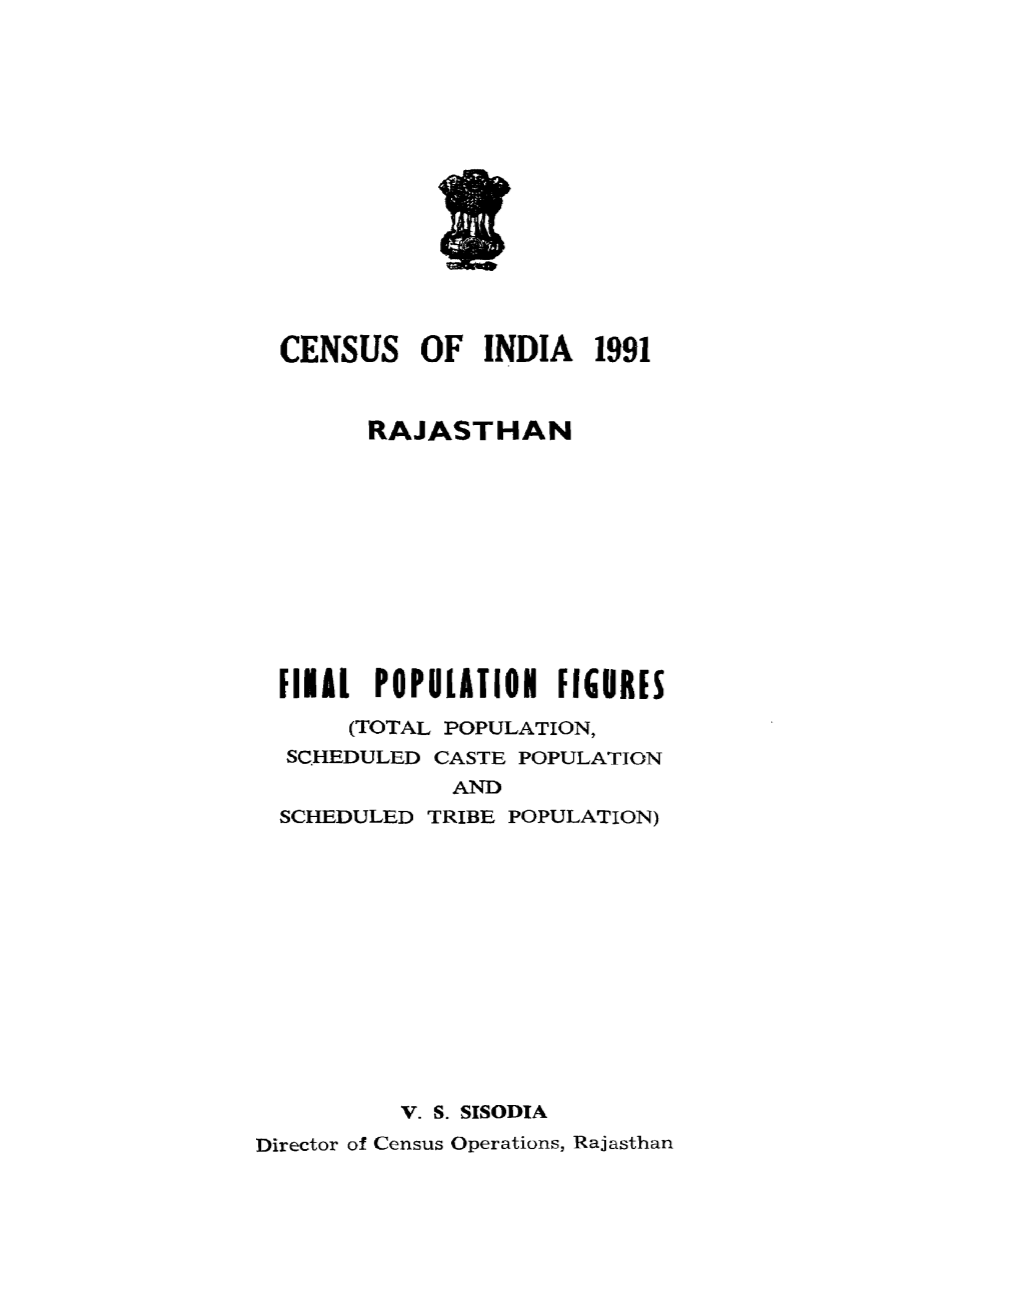 Final Population Figures, Rajasthan